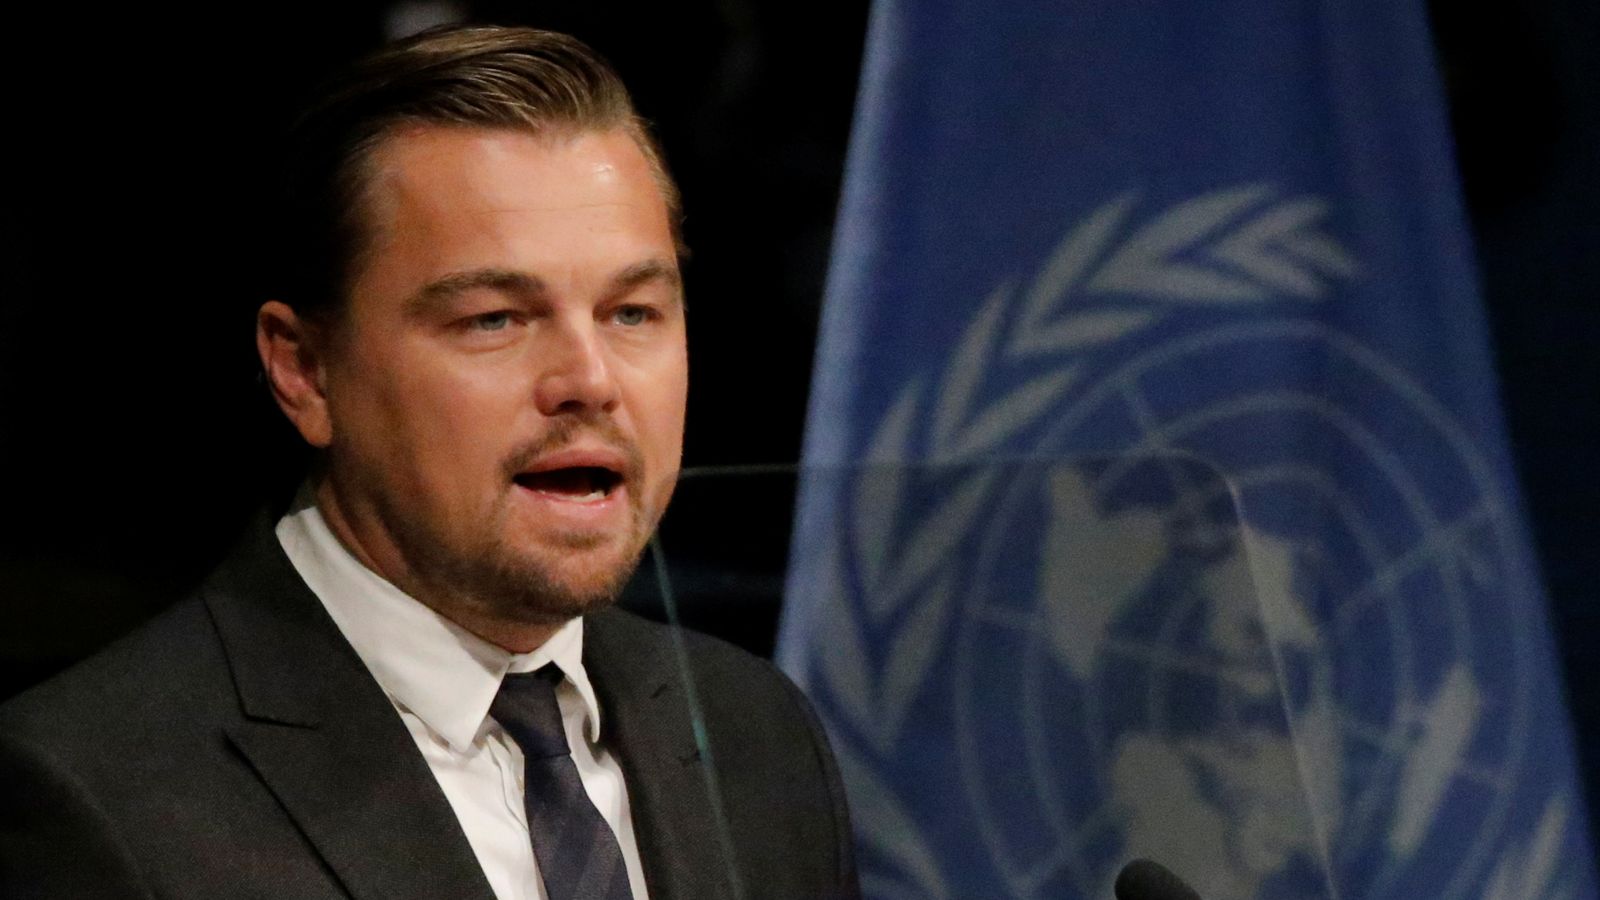 Leonardo DiCaprio: Brasiliens Jair Bolsonaro schließt Hörner mit Öko-Aktivisten-Star über Wahlaufruf |  Weltnachrichten